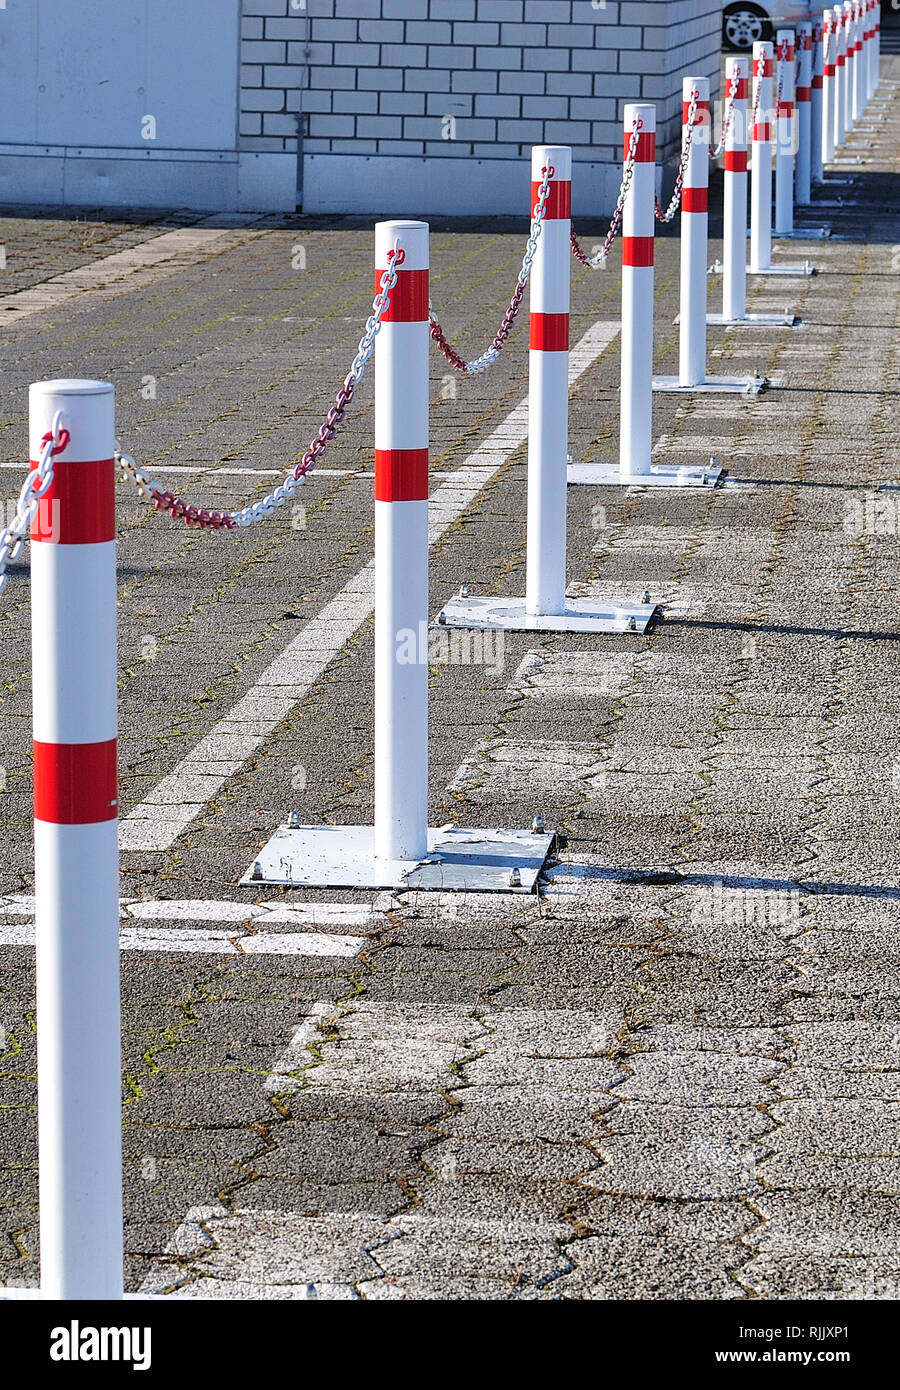 Límite en un parking con postes metálicos interconectados con cadenas  Fotografía de stock - Alamy